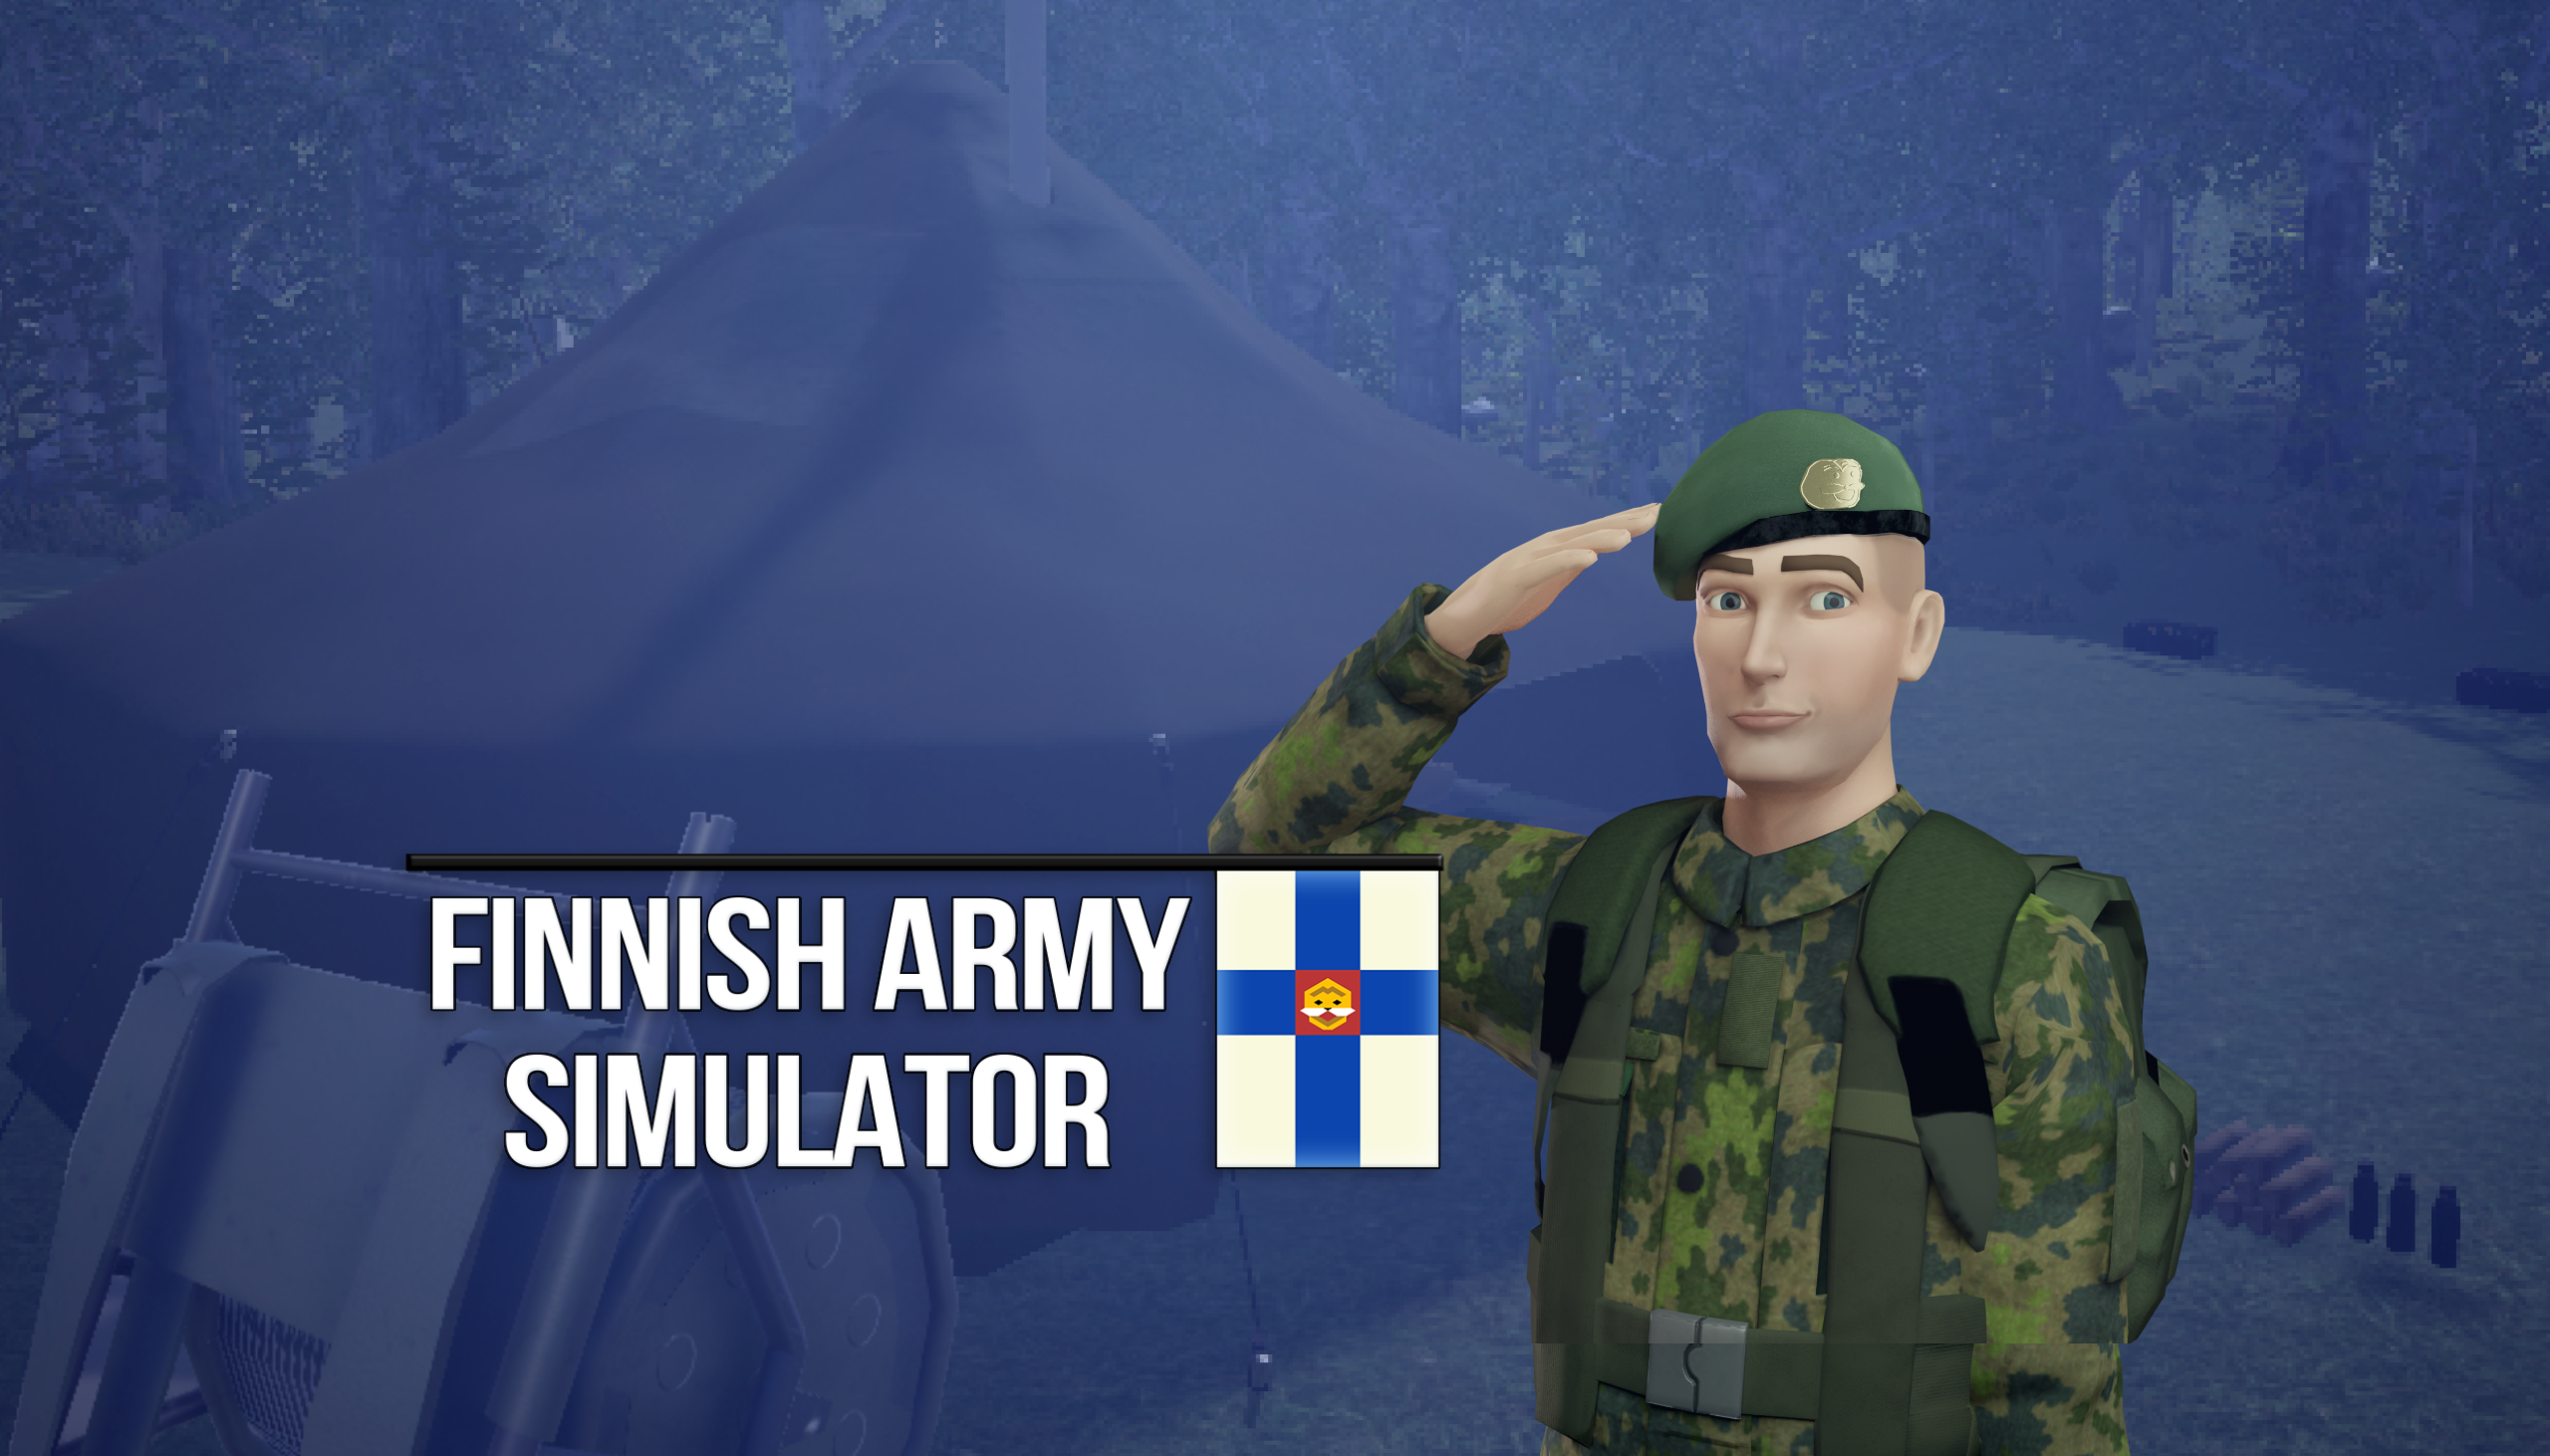 Finnish Army Simulator lanciato in Accesso Anticipato su PC. Ne avevamo davvero bisogno?